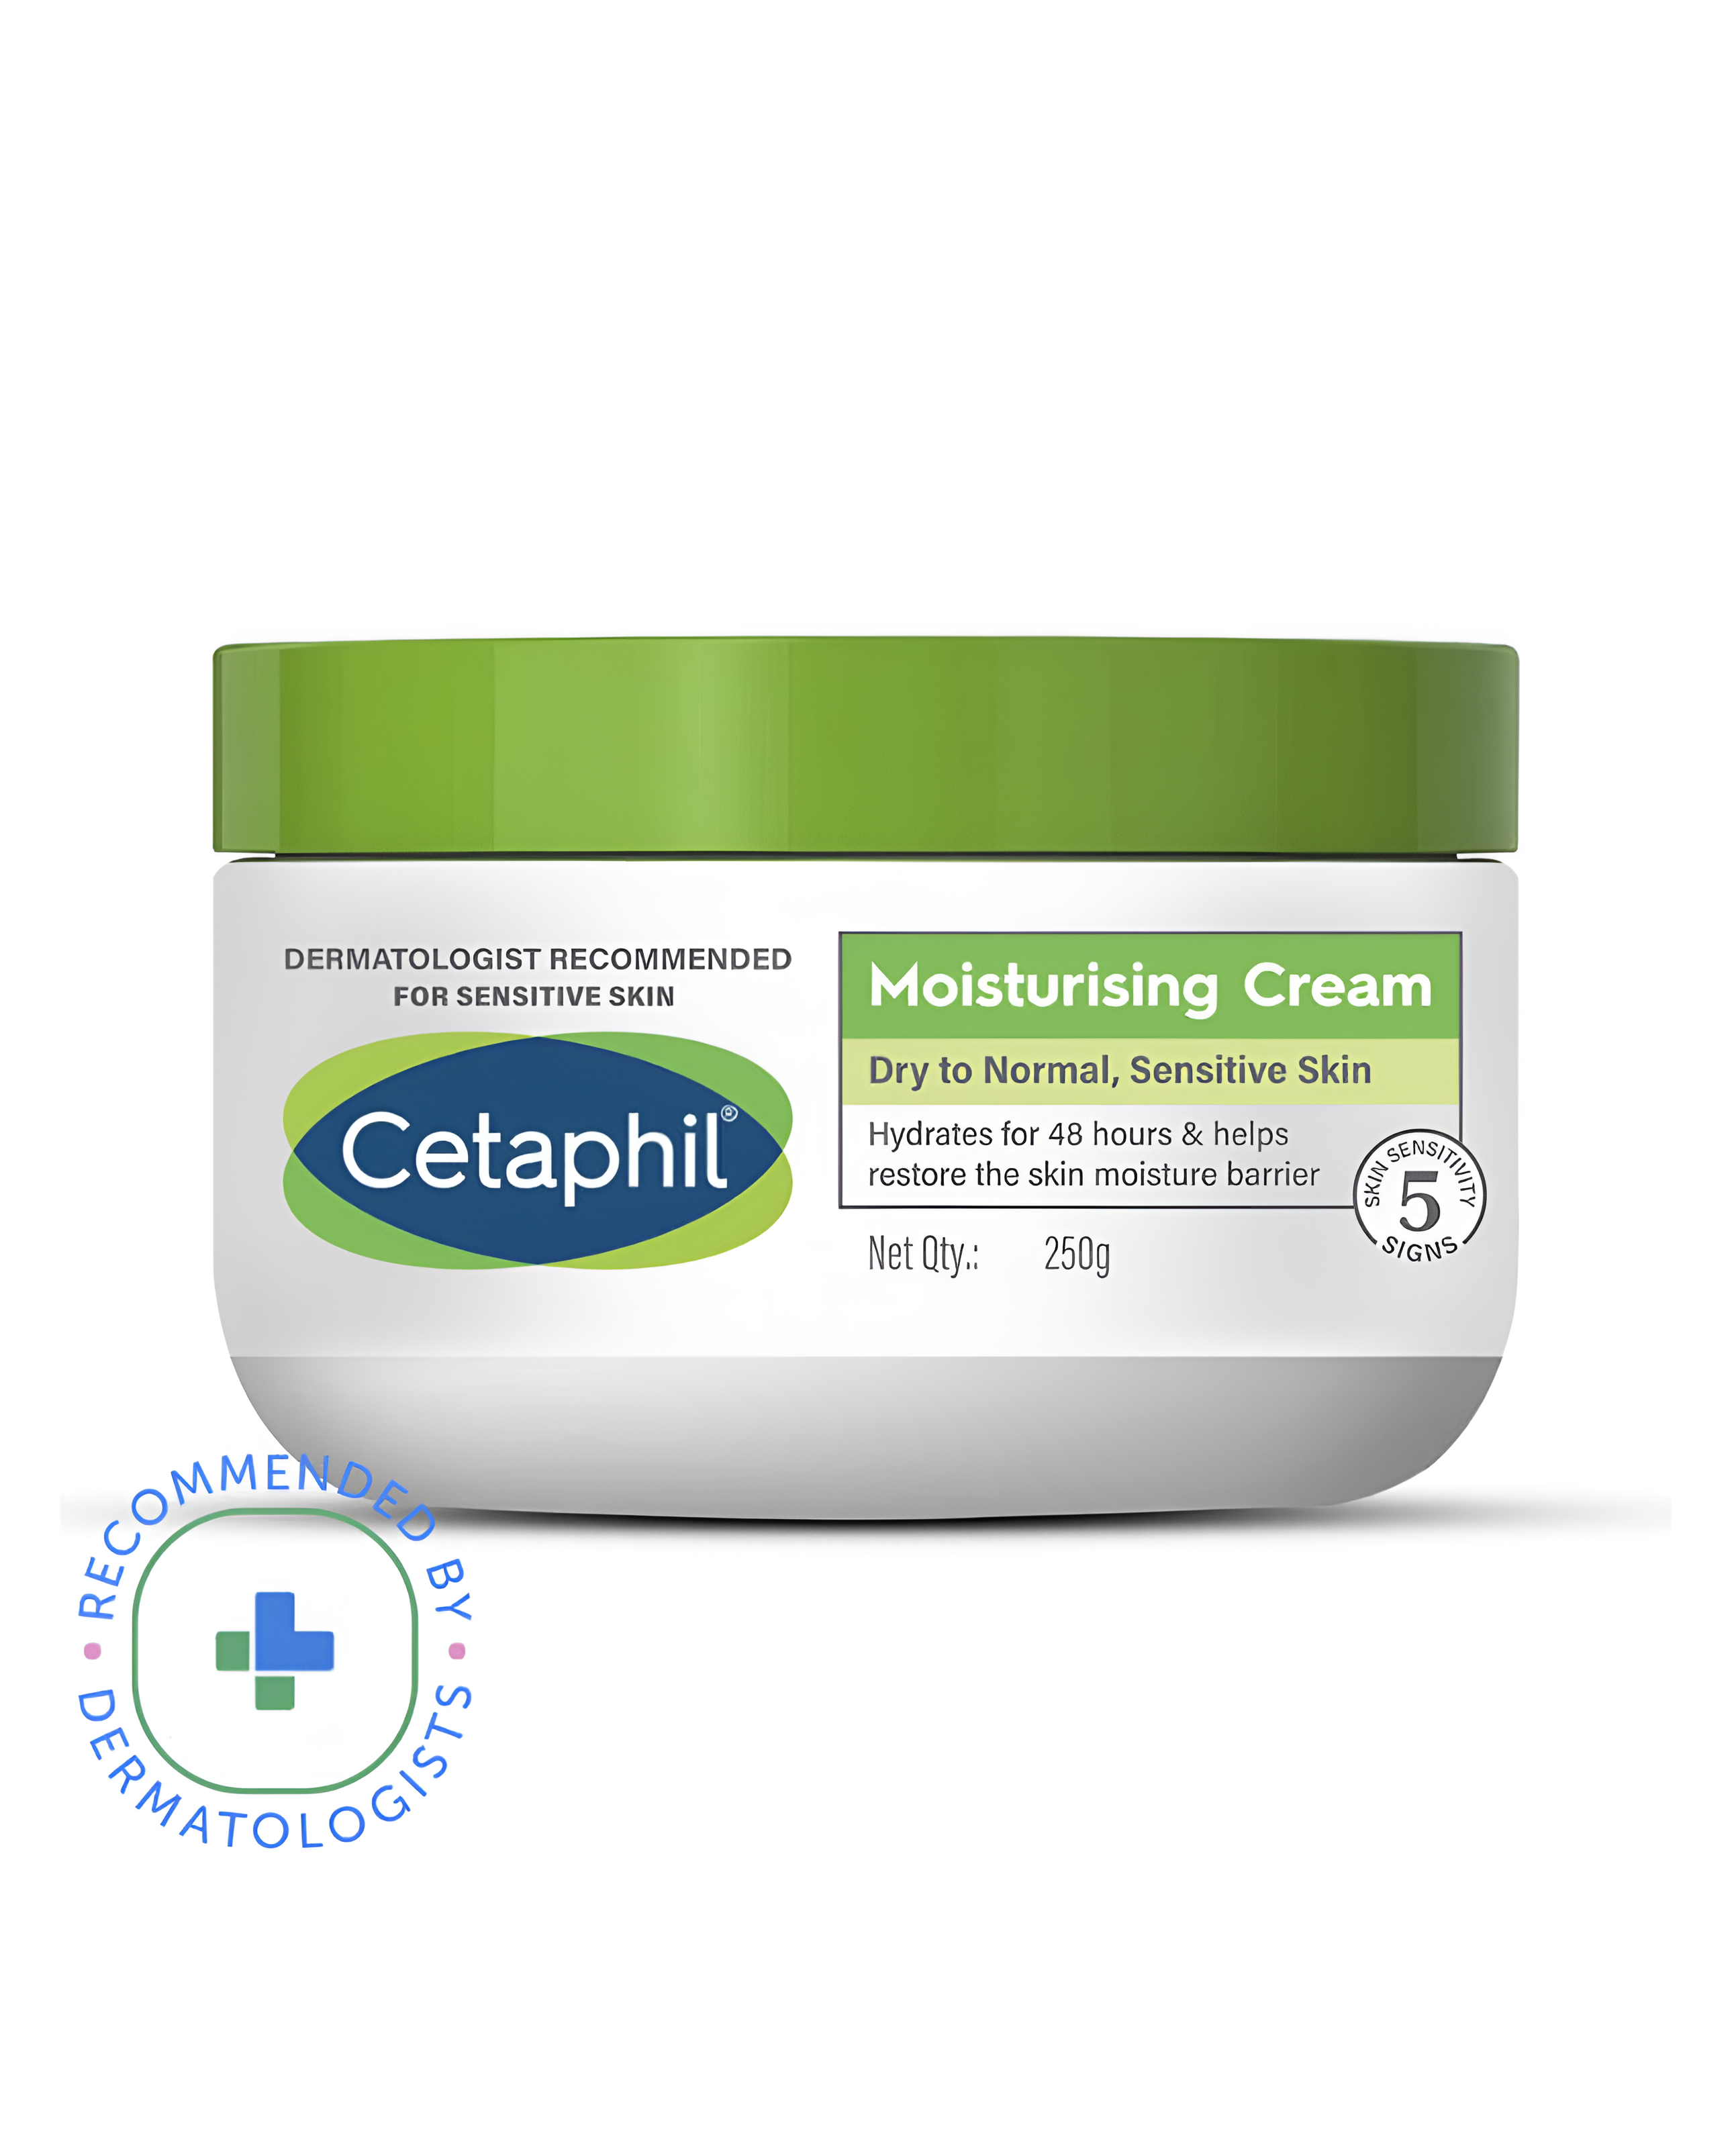 Cetaphil moisturising cream